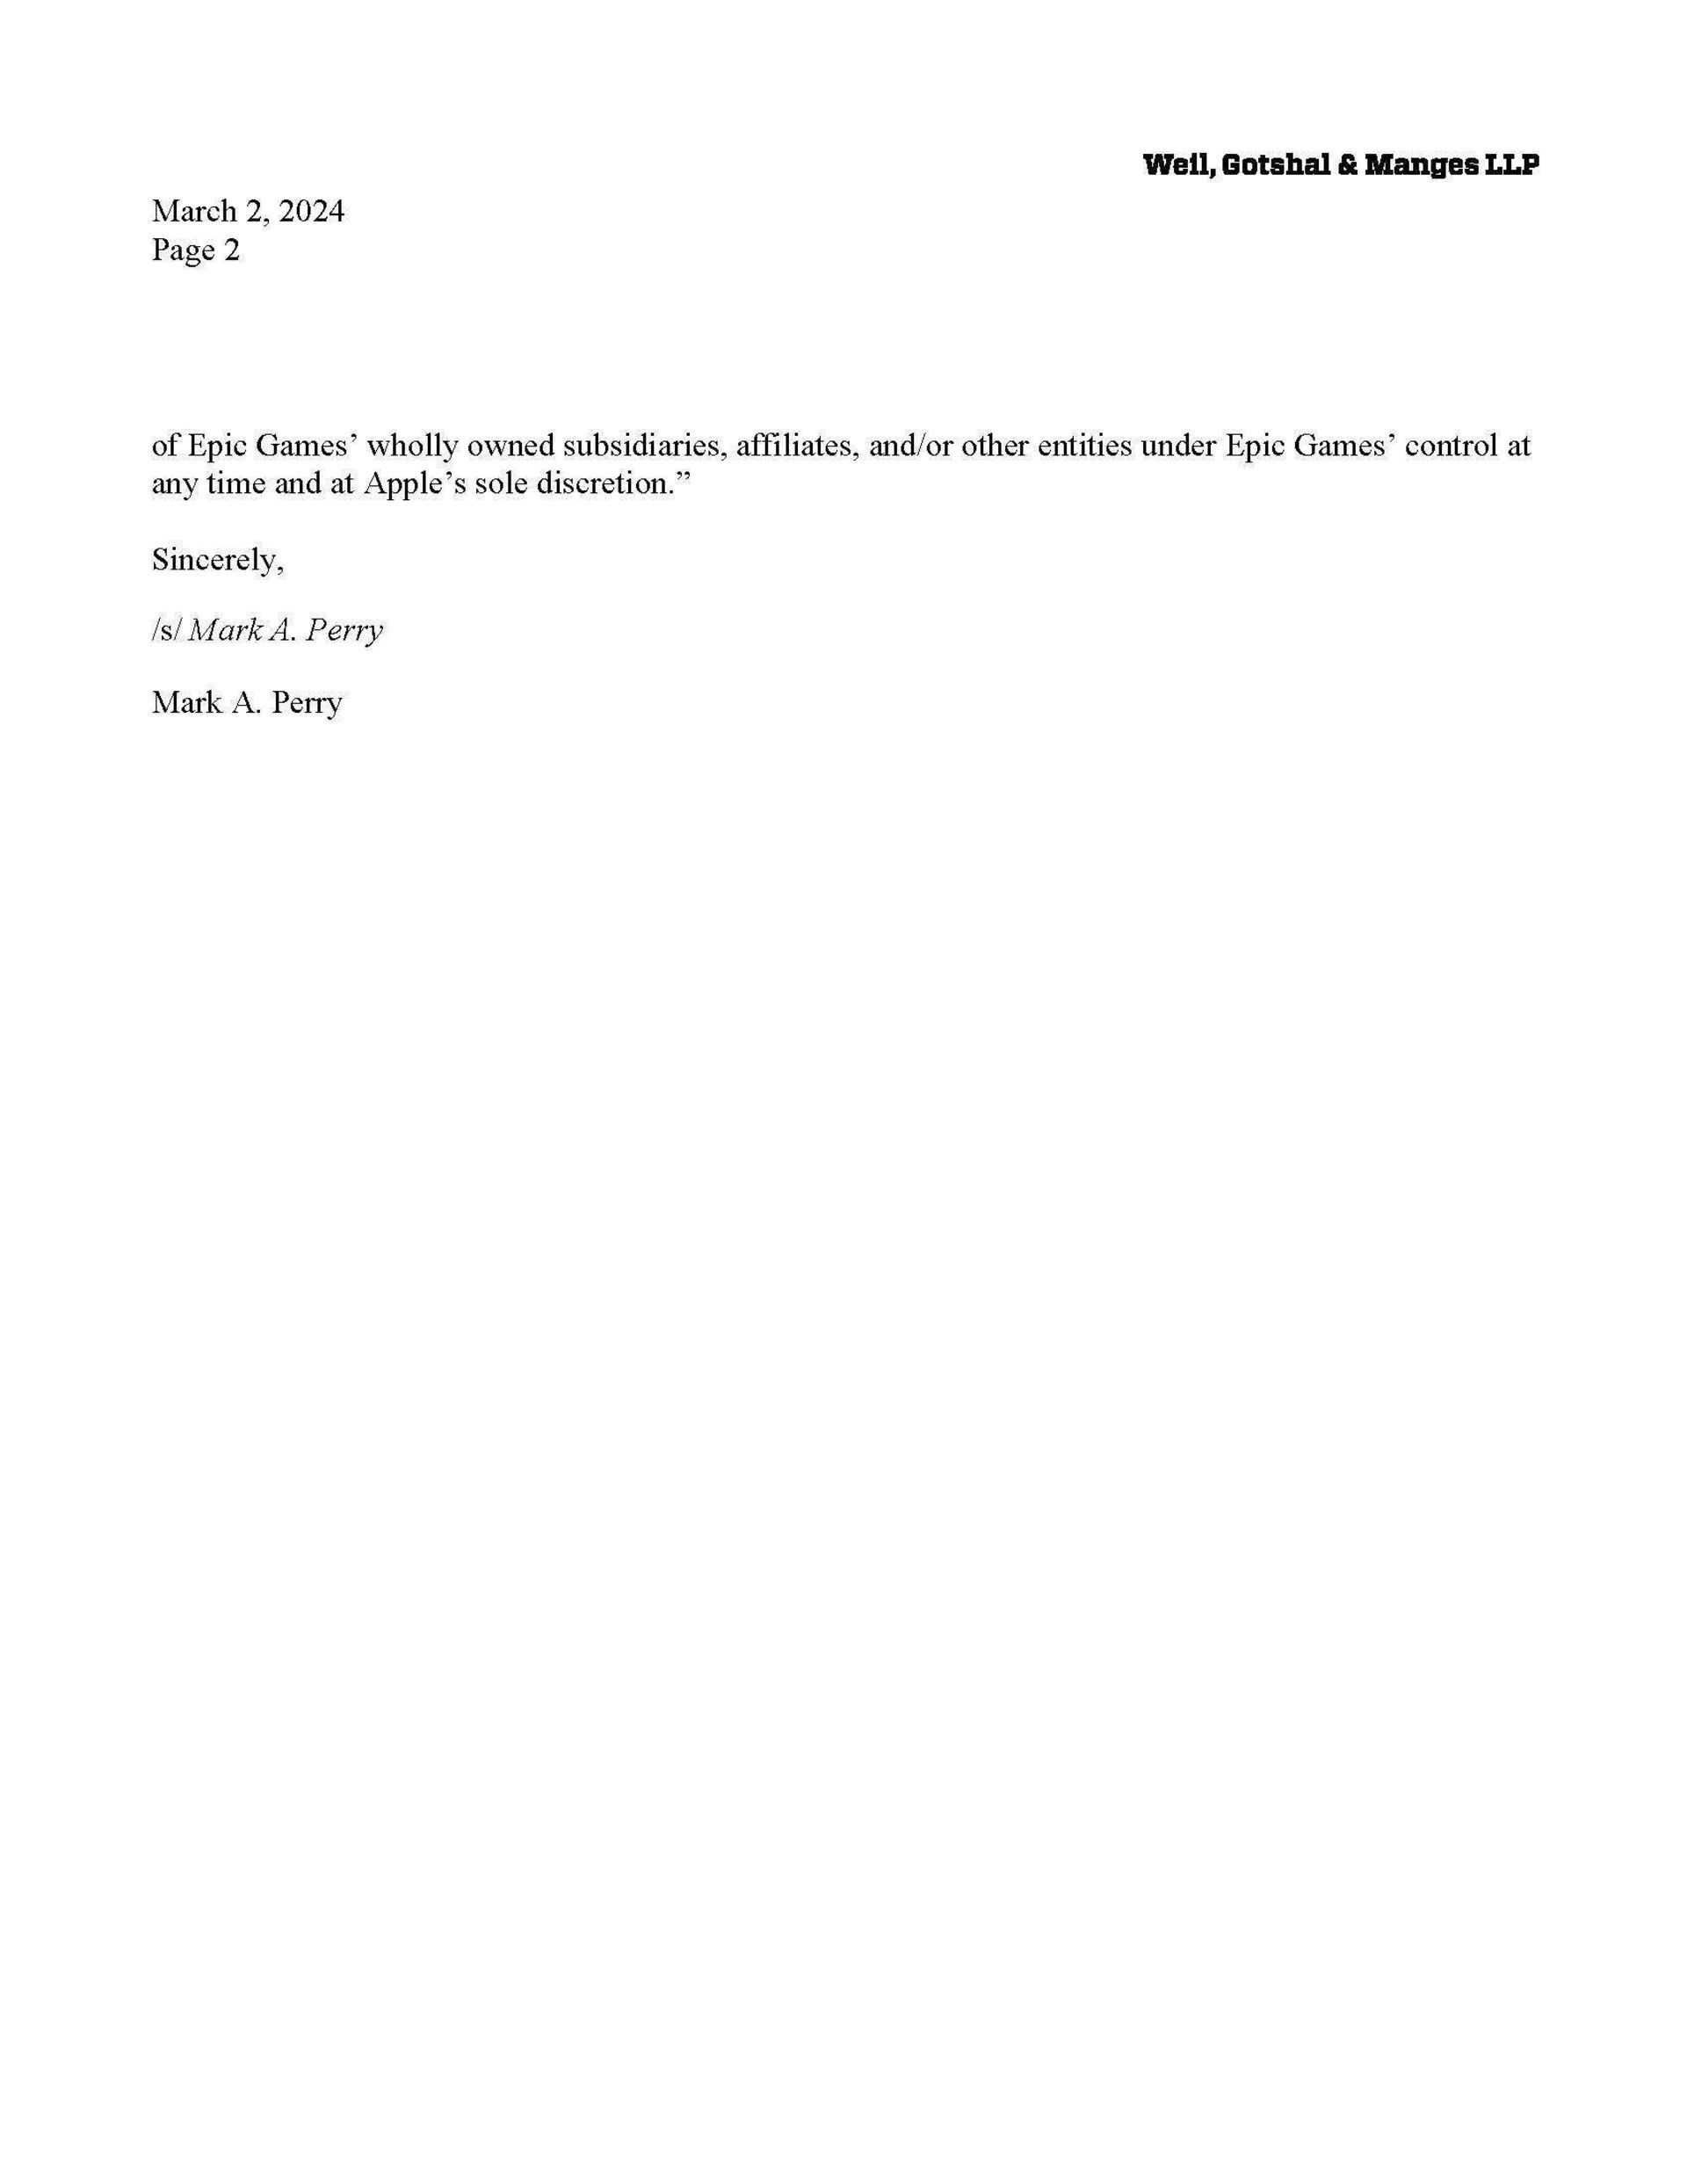 نامه‌ی تیم حقوقی اپل به اپیک گیمز